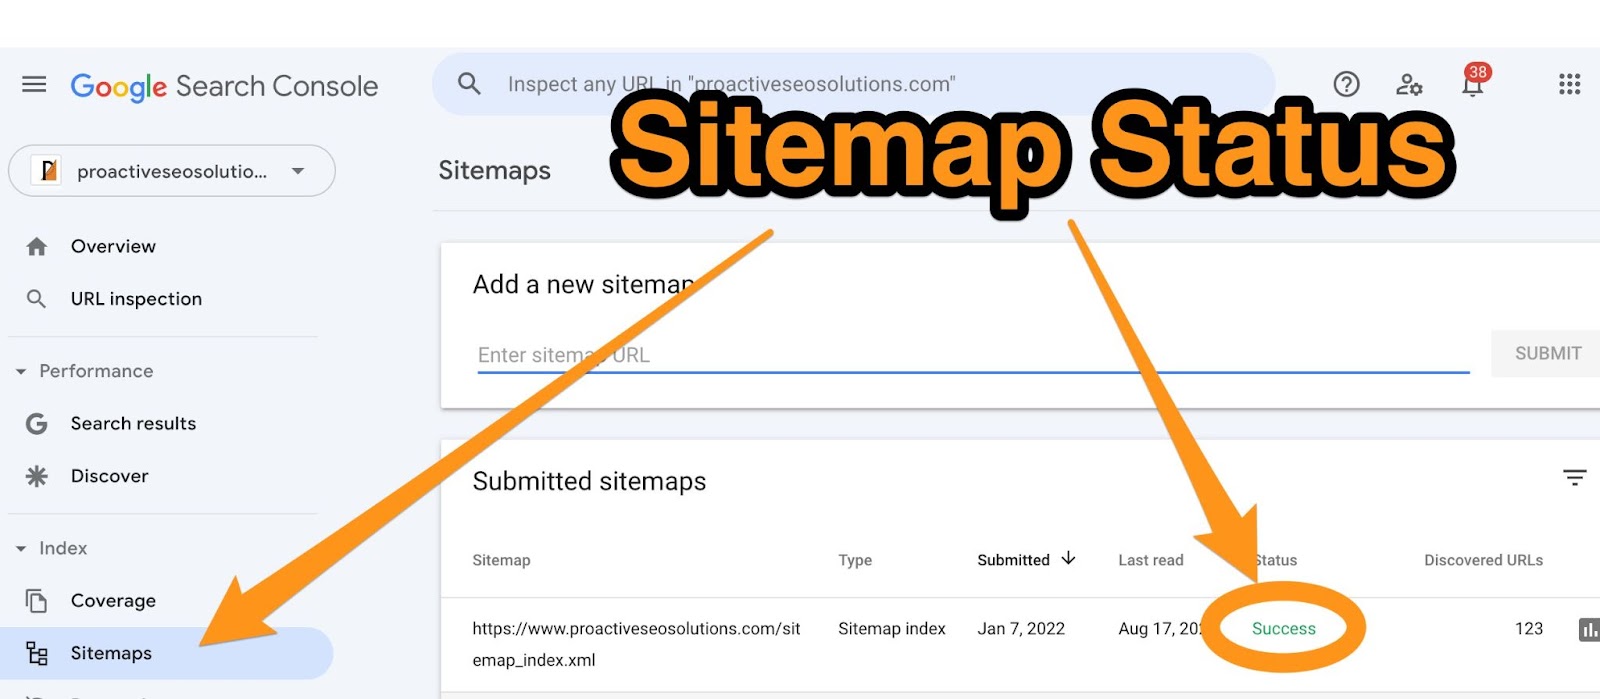 Sitemap Status